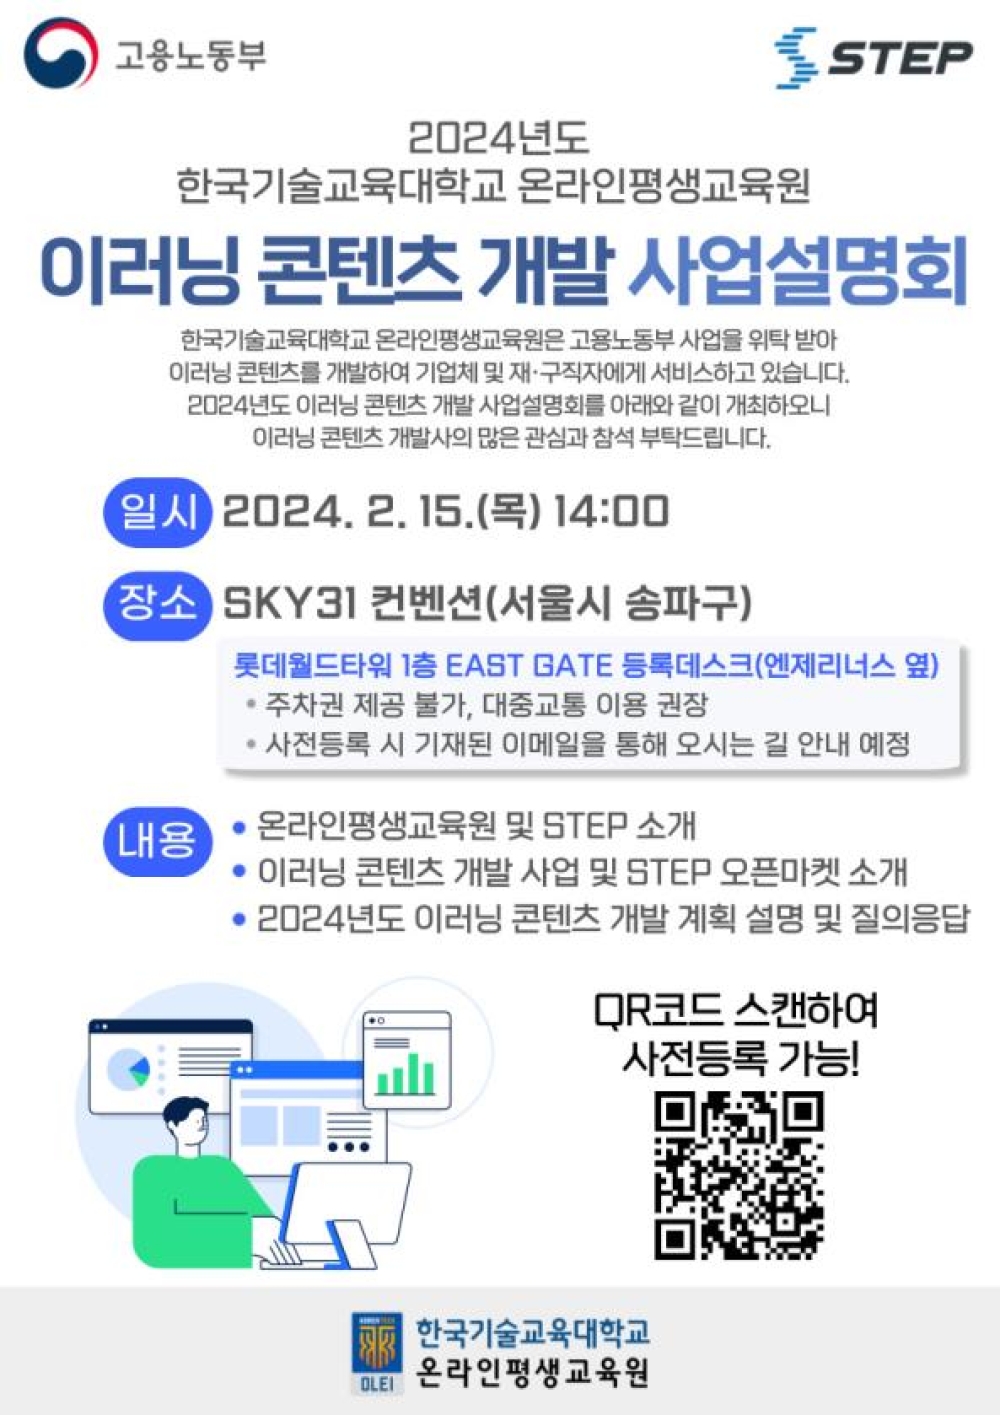 [브릿지경제신문] 한기대 온라인평생교육원, 2024년도 스텝 콘텐츠 개발 사업설명회 개최